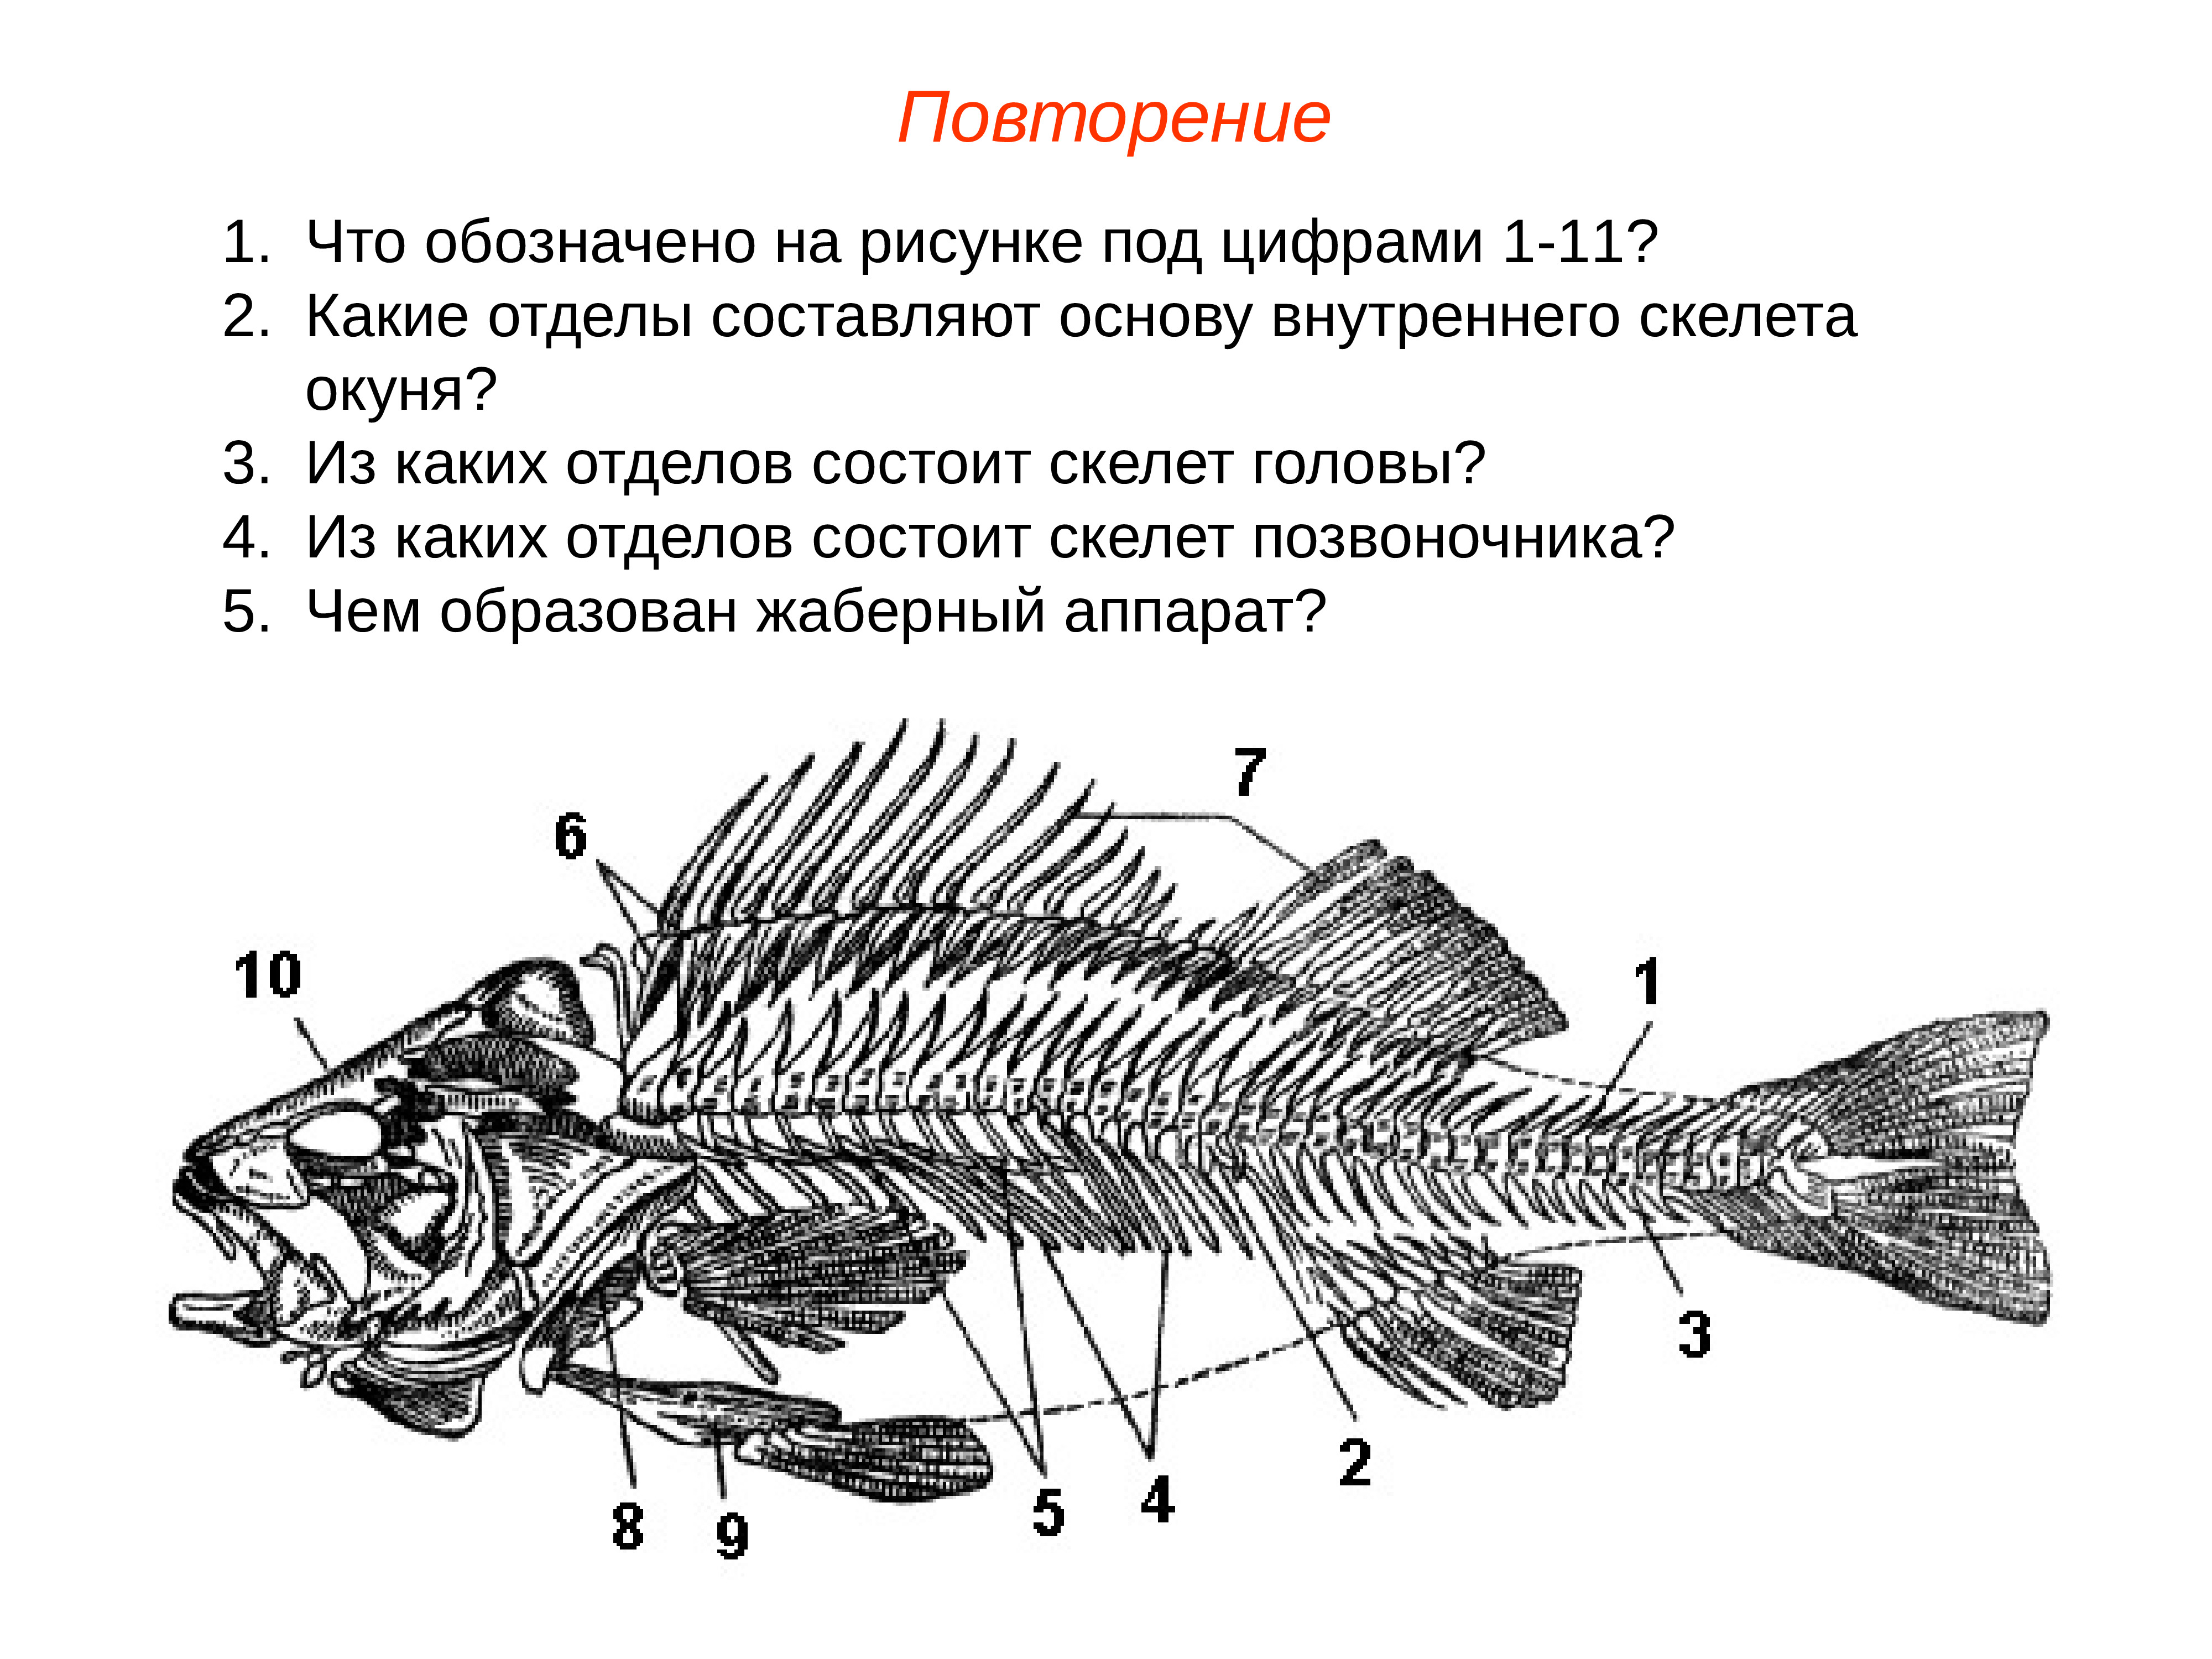 Строение скелета костных рыб